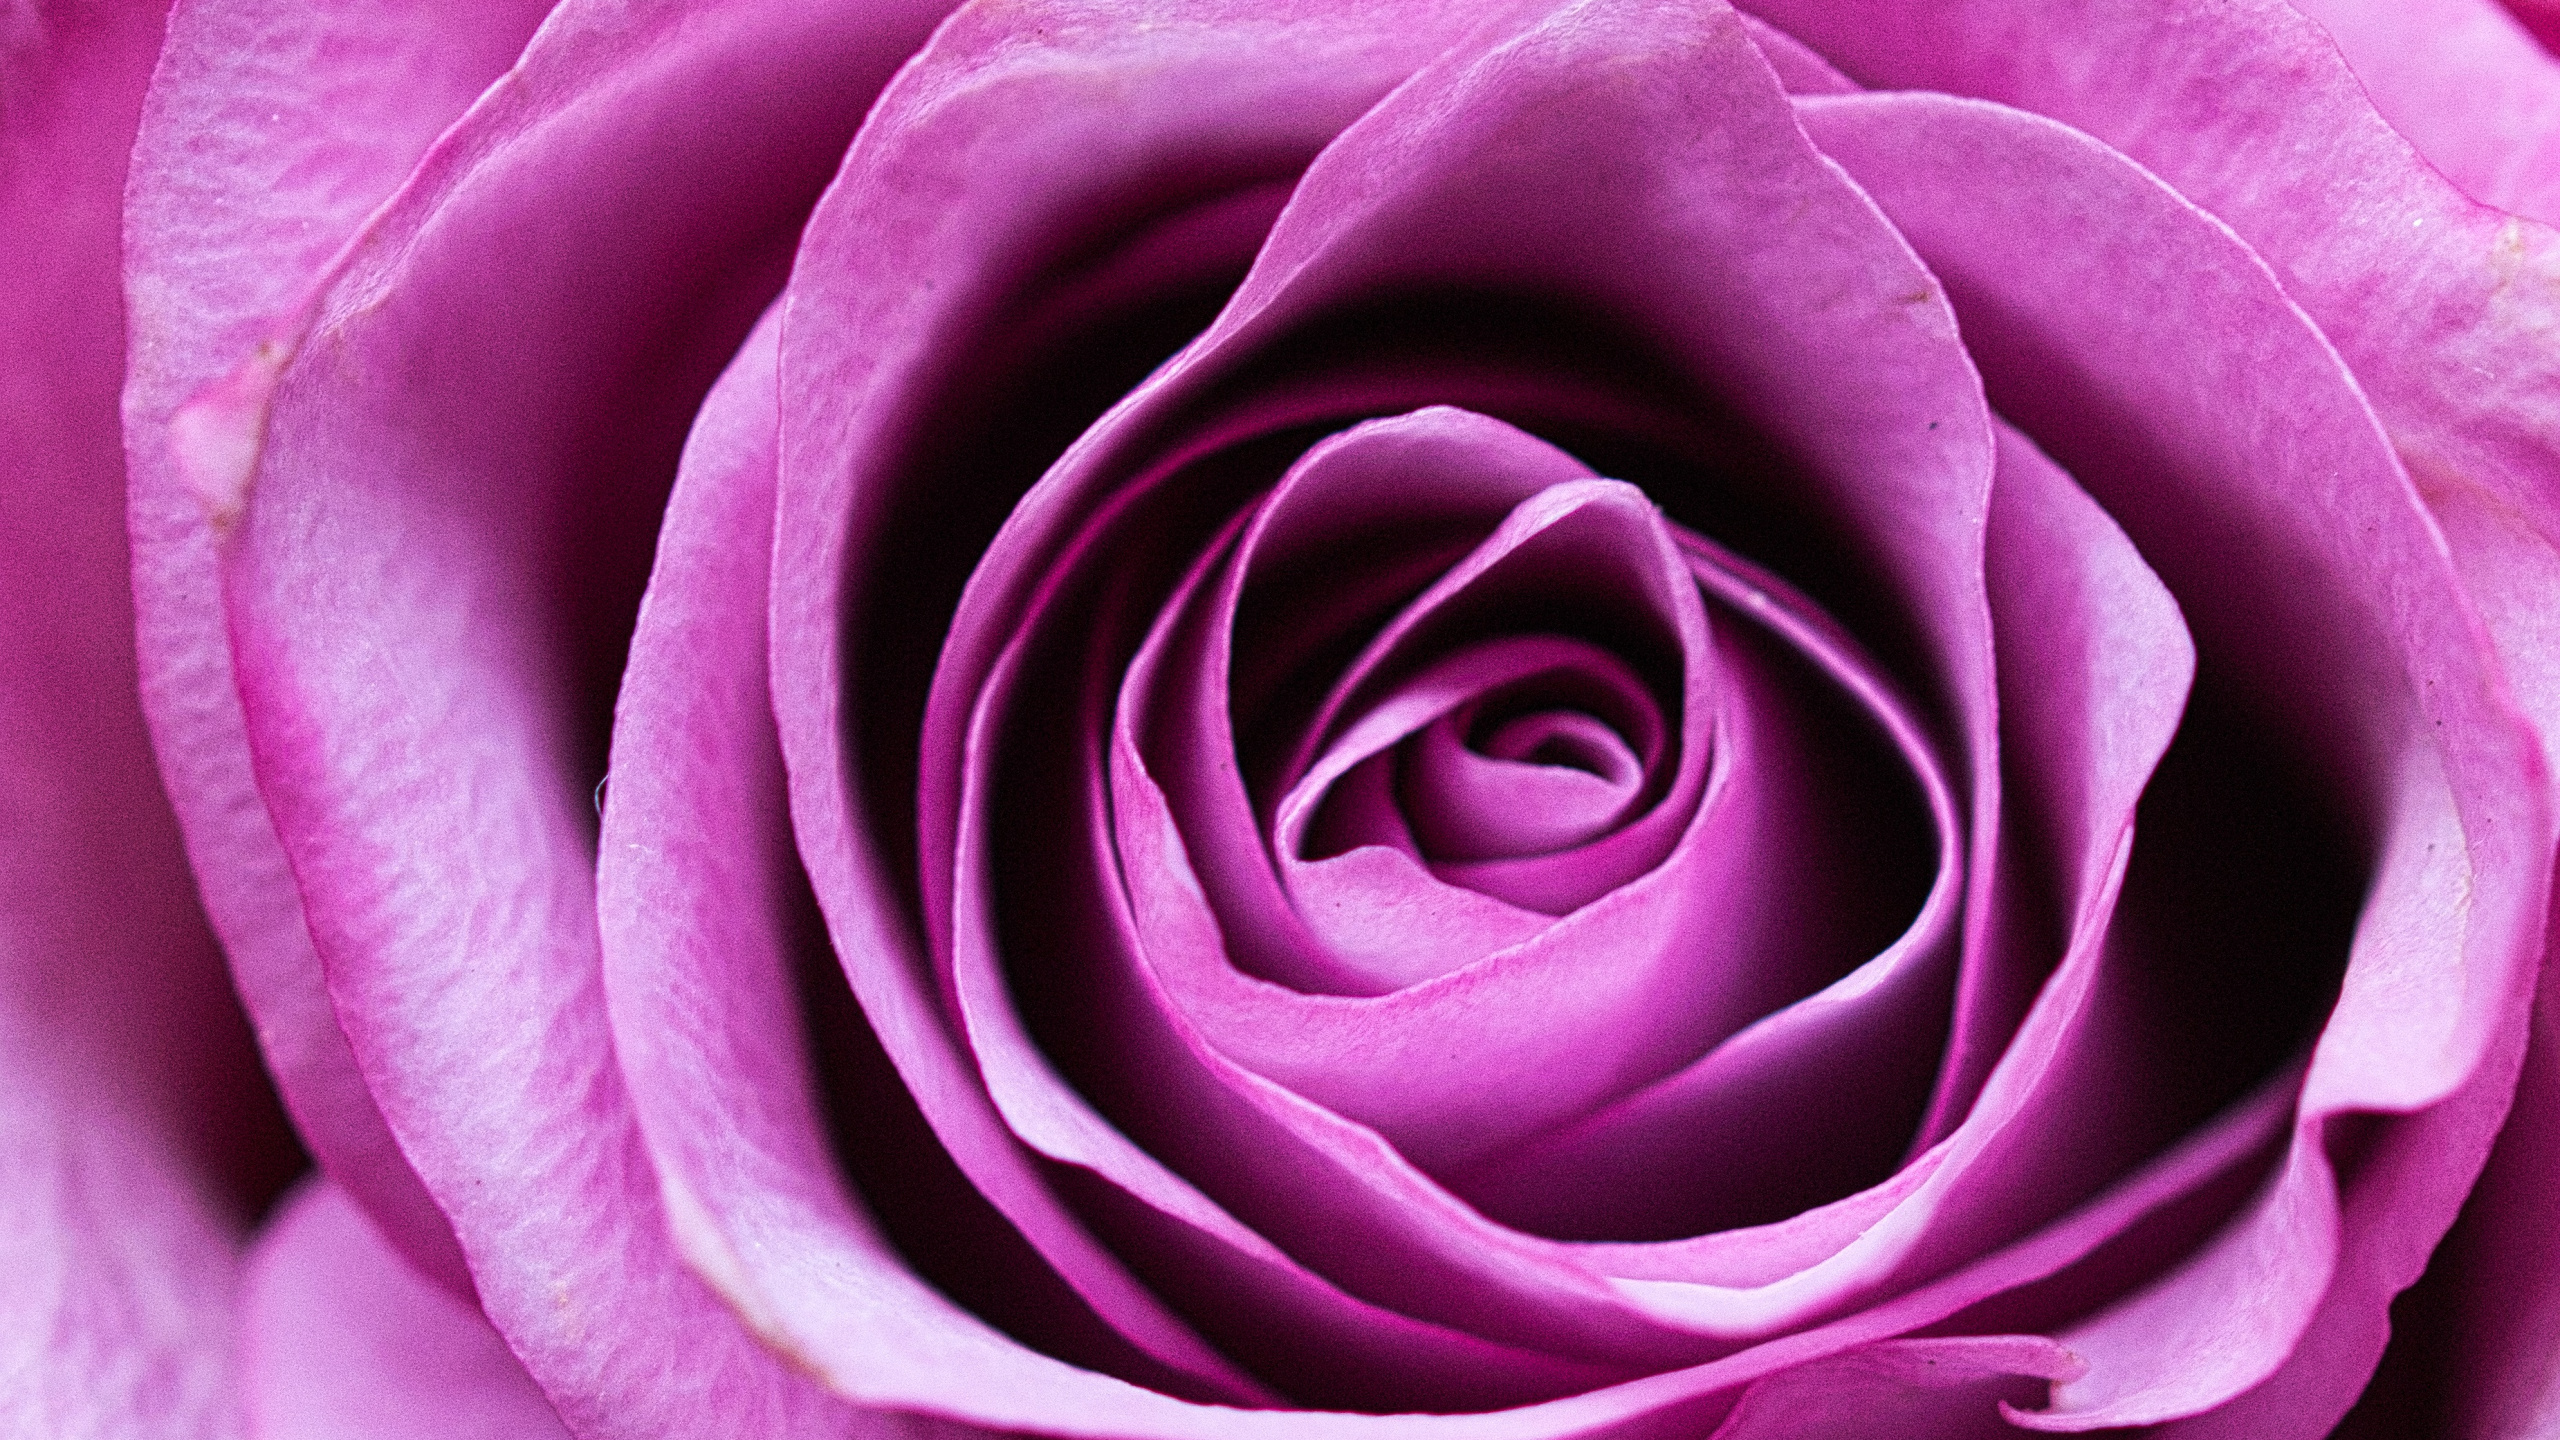 粉红色, 玫瑰花园, 紫罗兰色, 紫色的, 多花 壁纸 2560x1440 允许